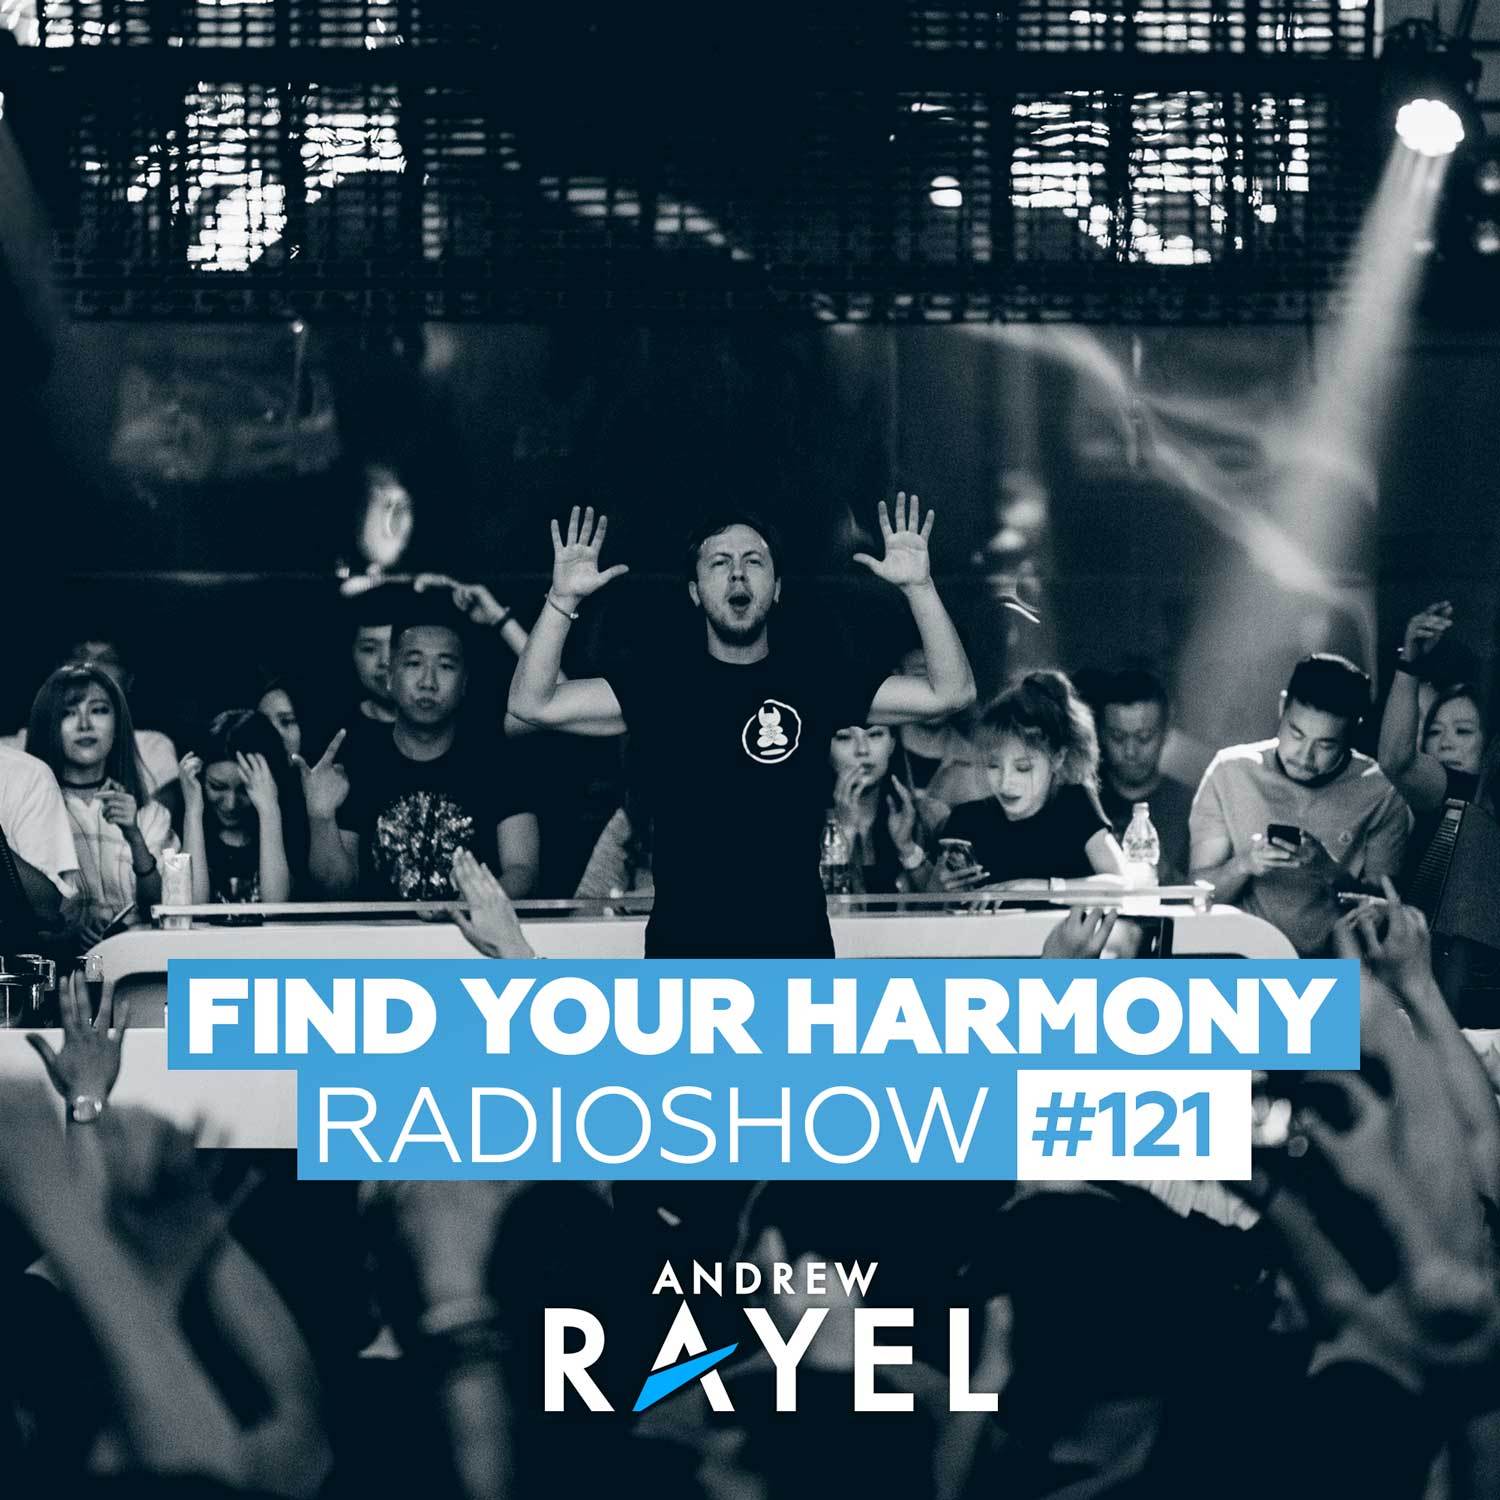 Find Your Harmony Radioshow #121